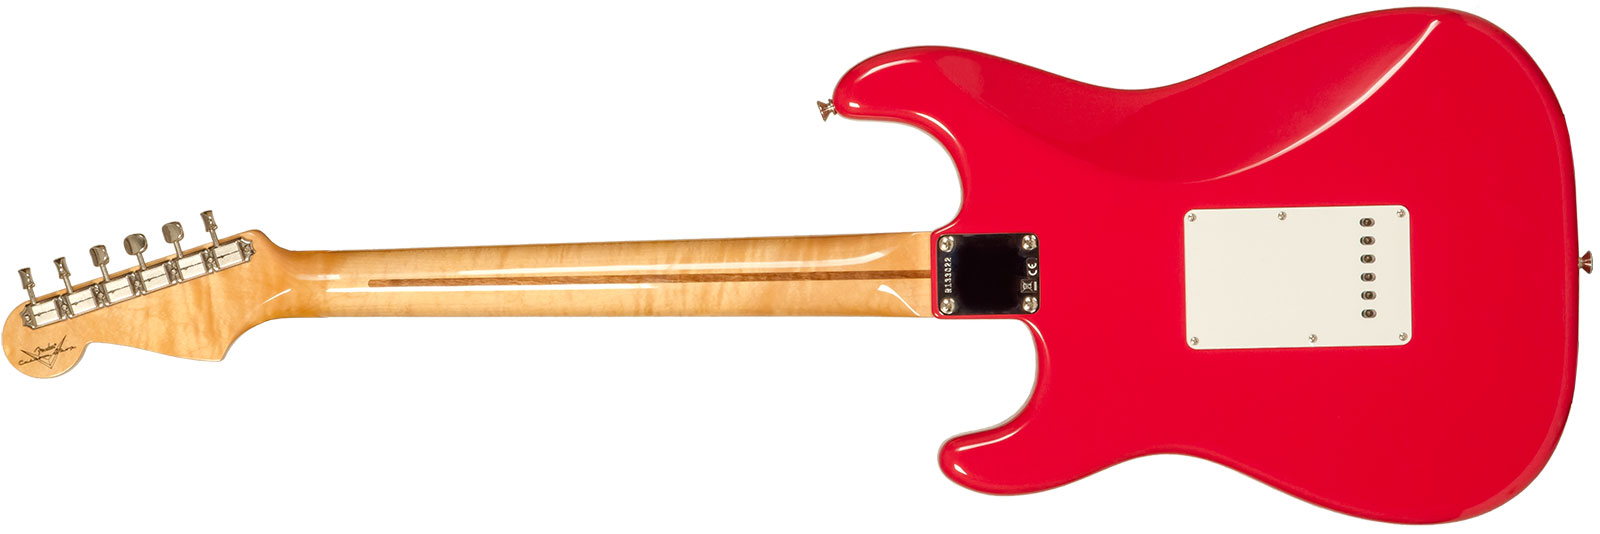 Fender Custom Shop Strat 1956 3s Trem Mn #r133022 - Nos Fiesta Red - Elektrische gitaar in Str-vorm - Variation 1